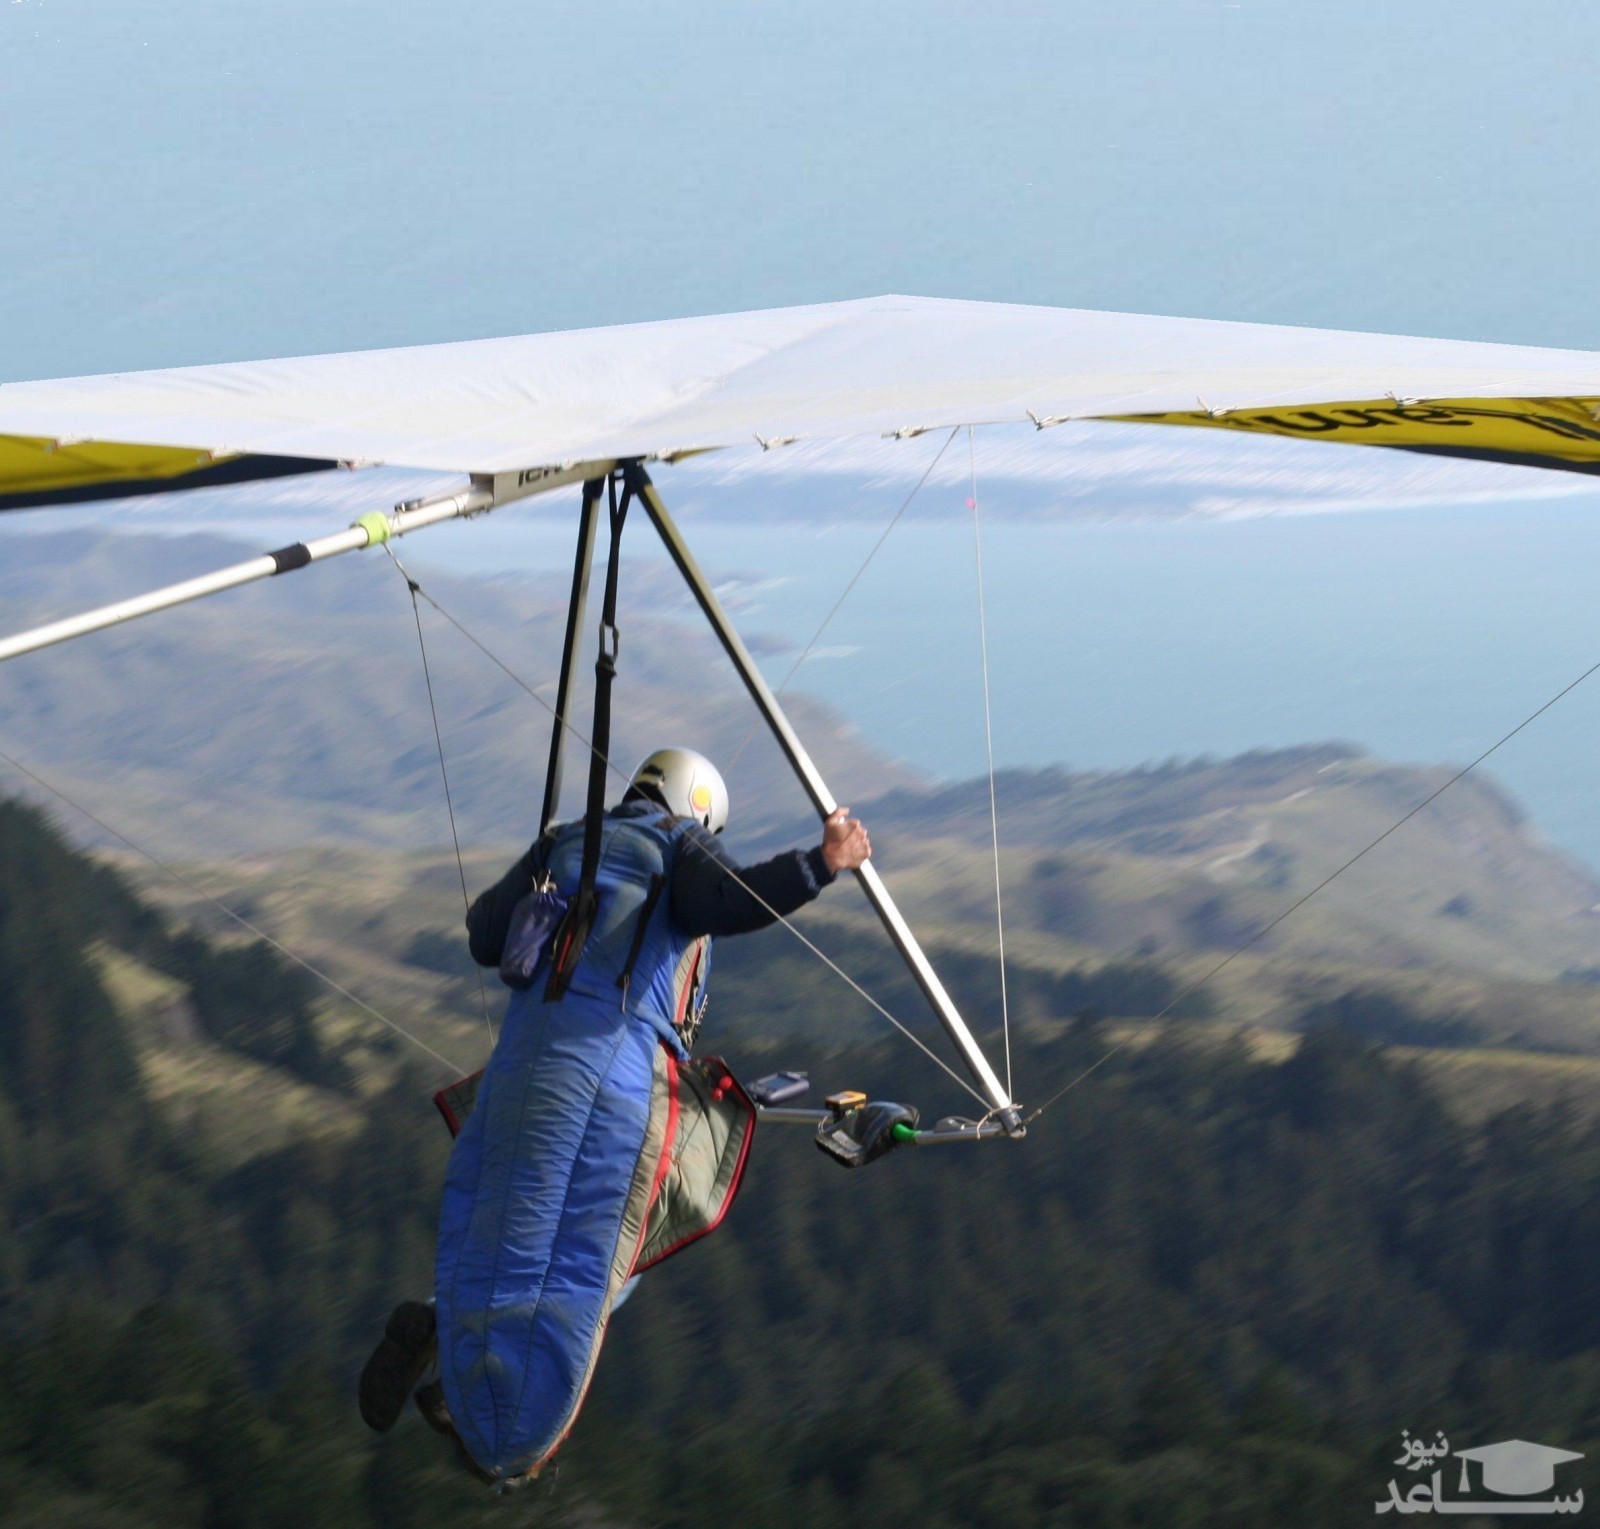 آشنایی با ورزش پرهیجان کایت سواری (Hang gliding)